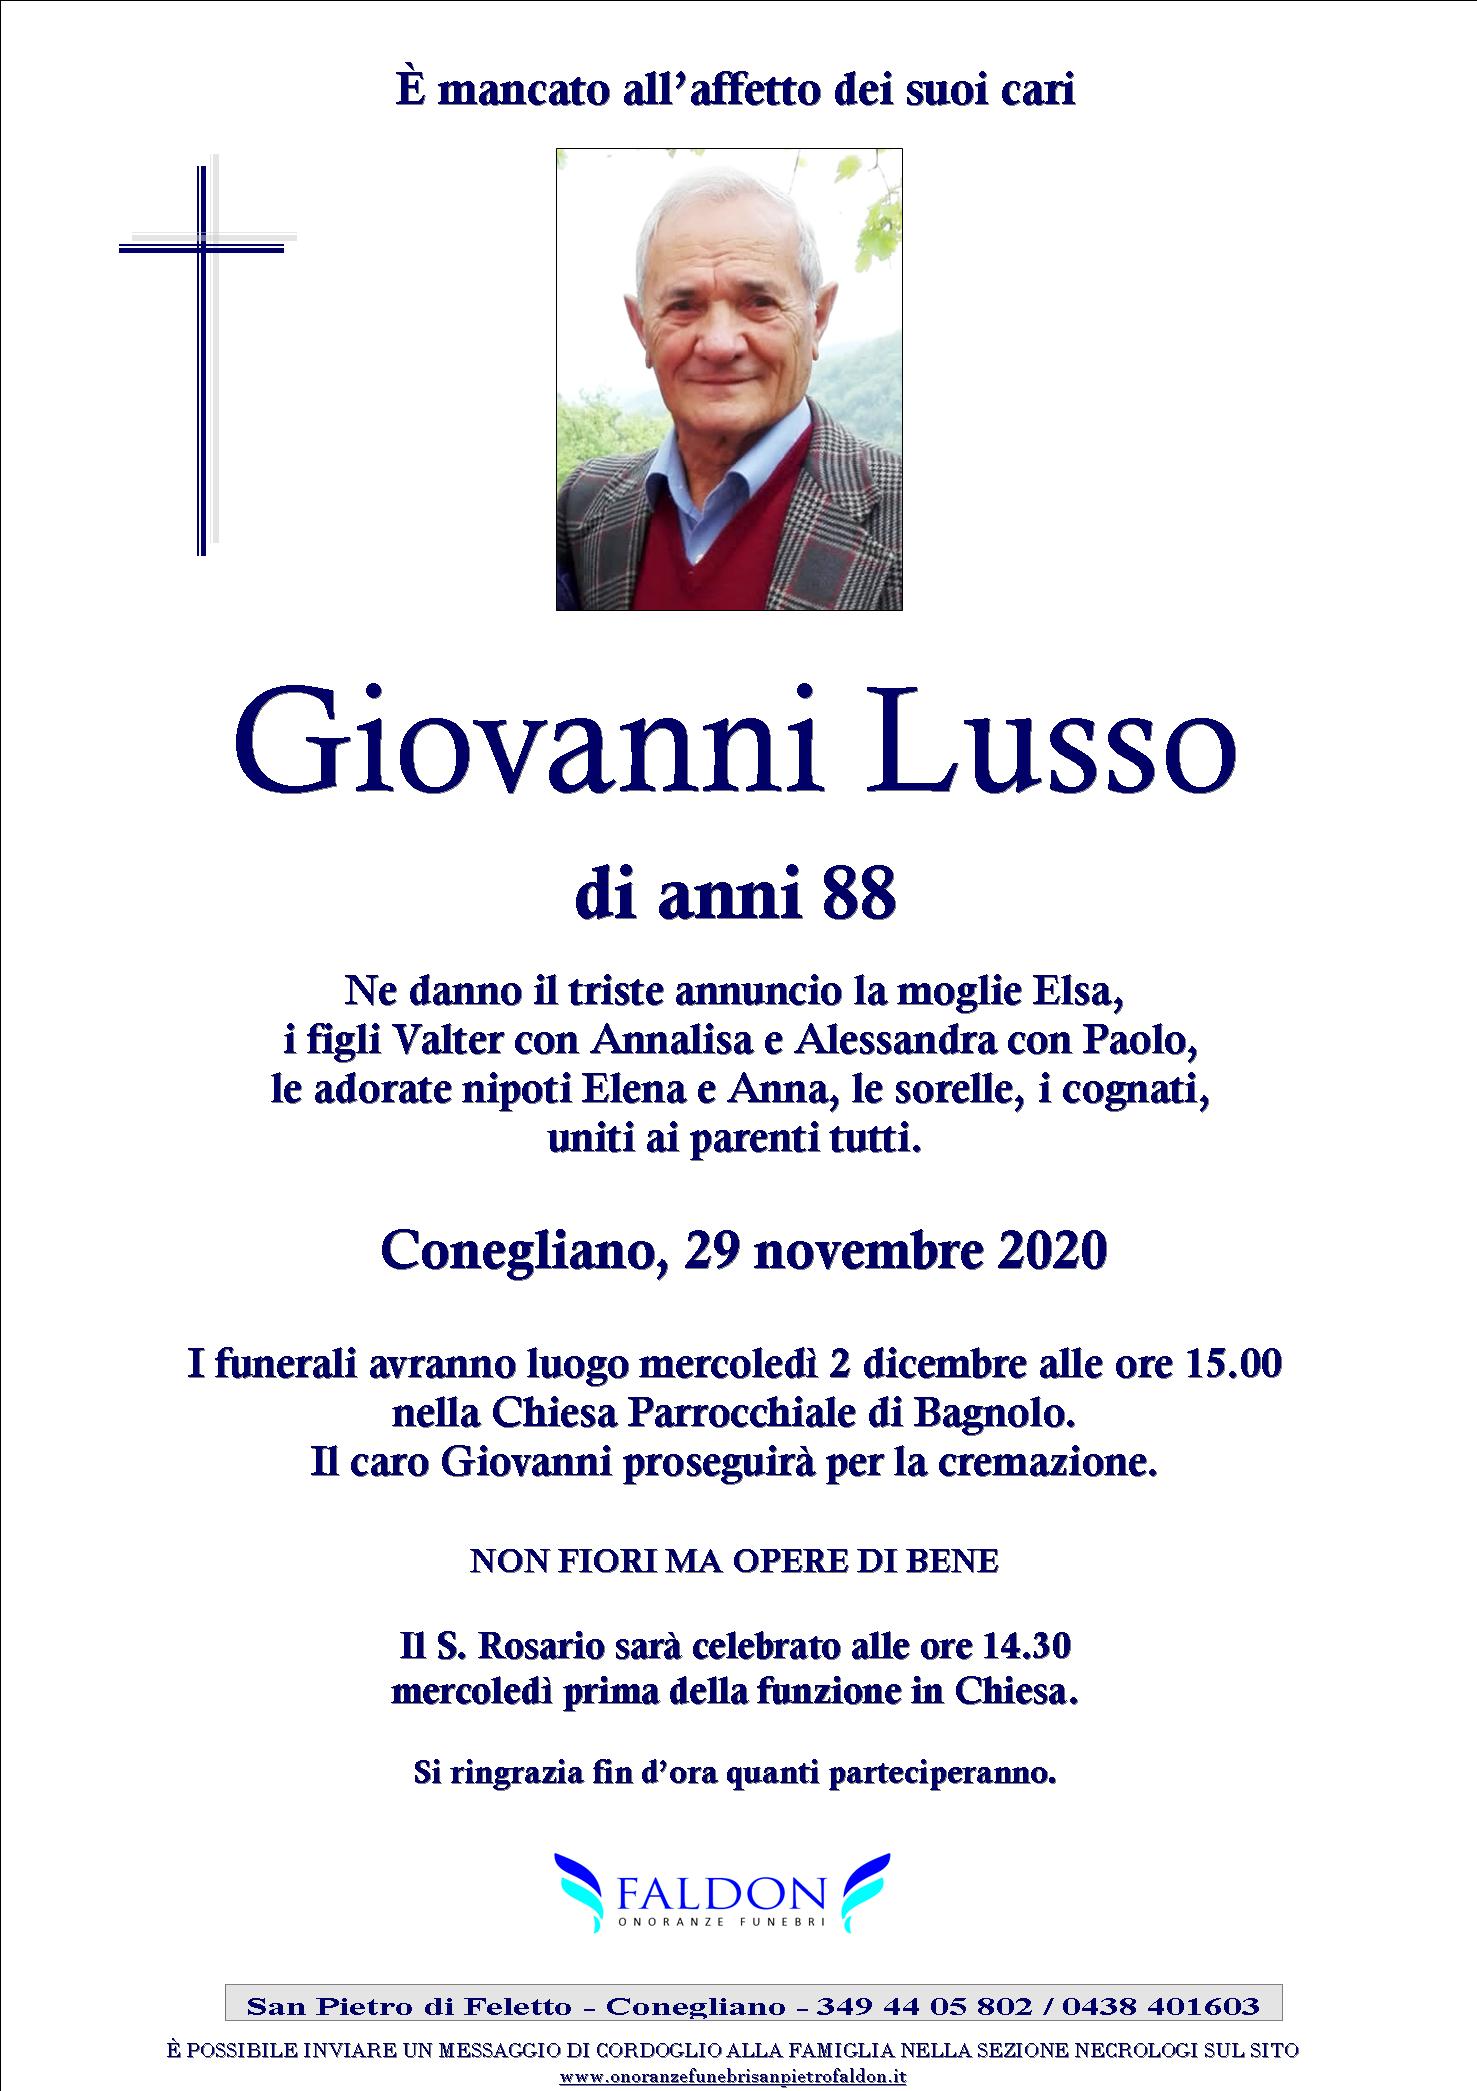 Giovanni Lusso